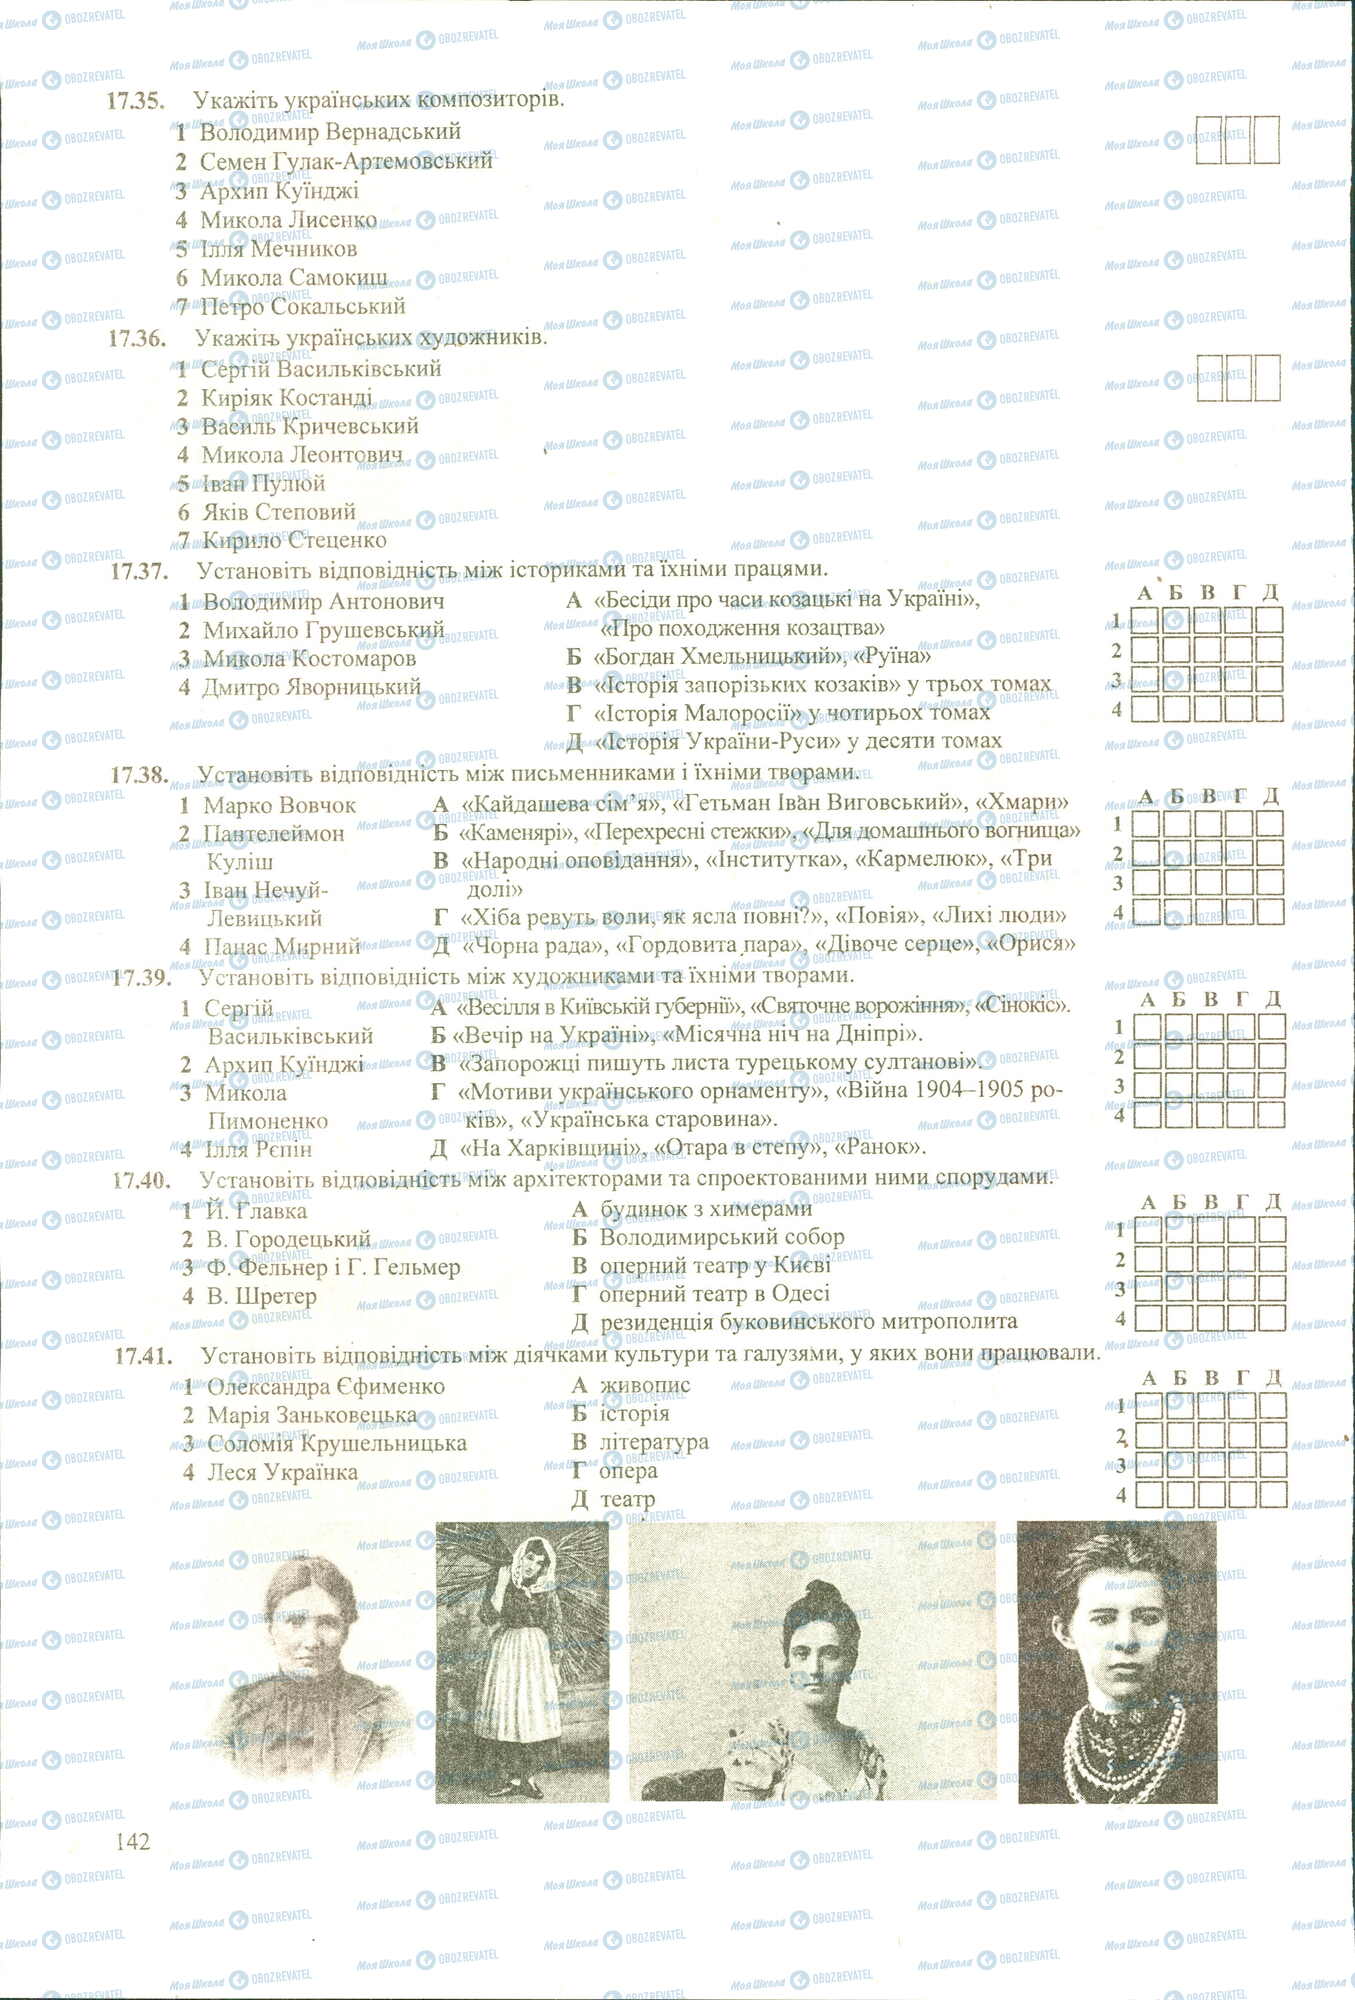 ЗНО История Украины 11 класс страница 35-41